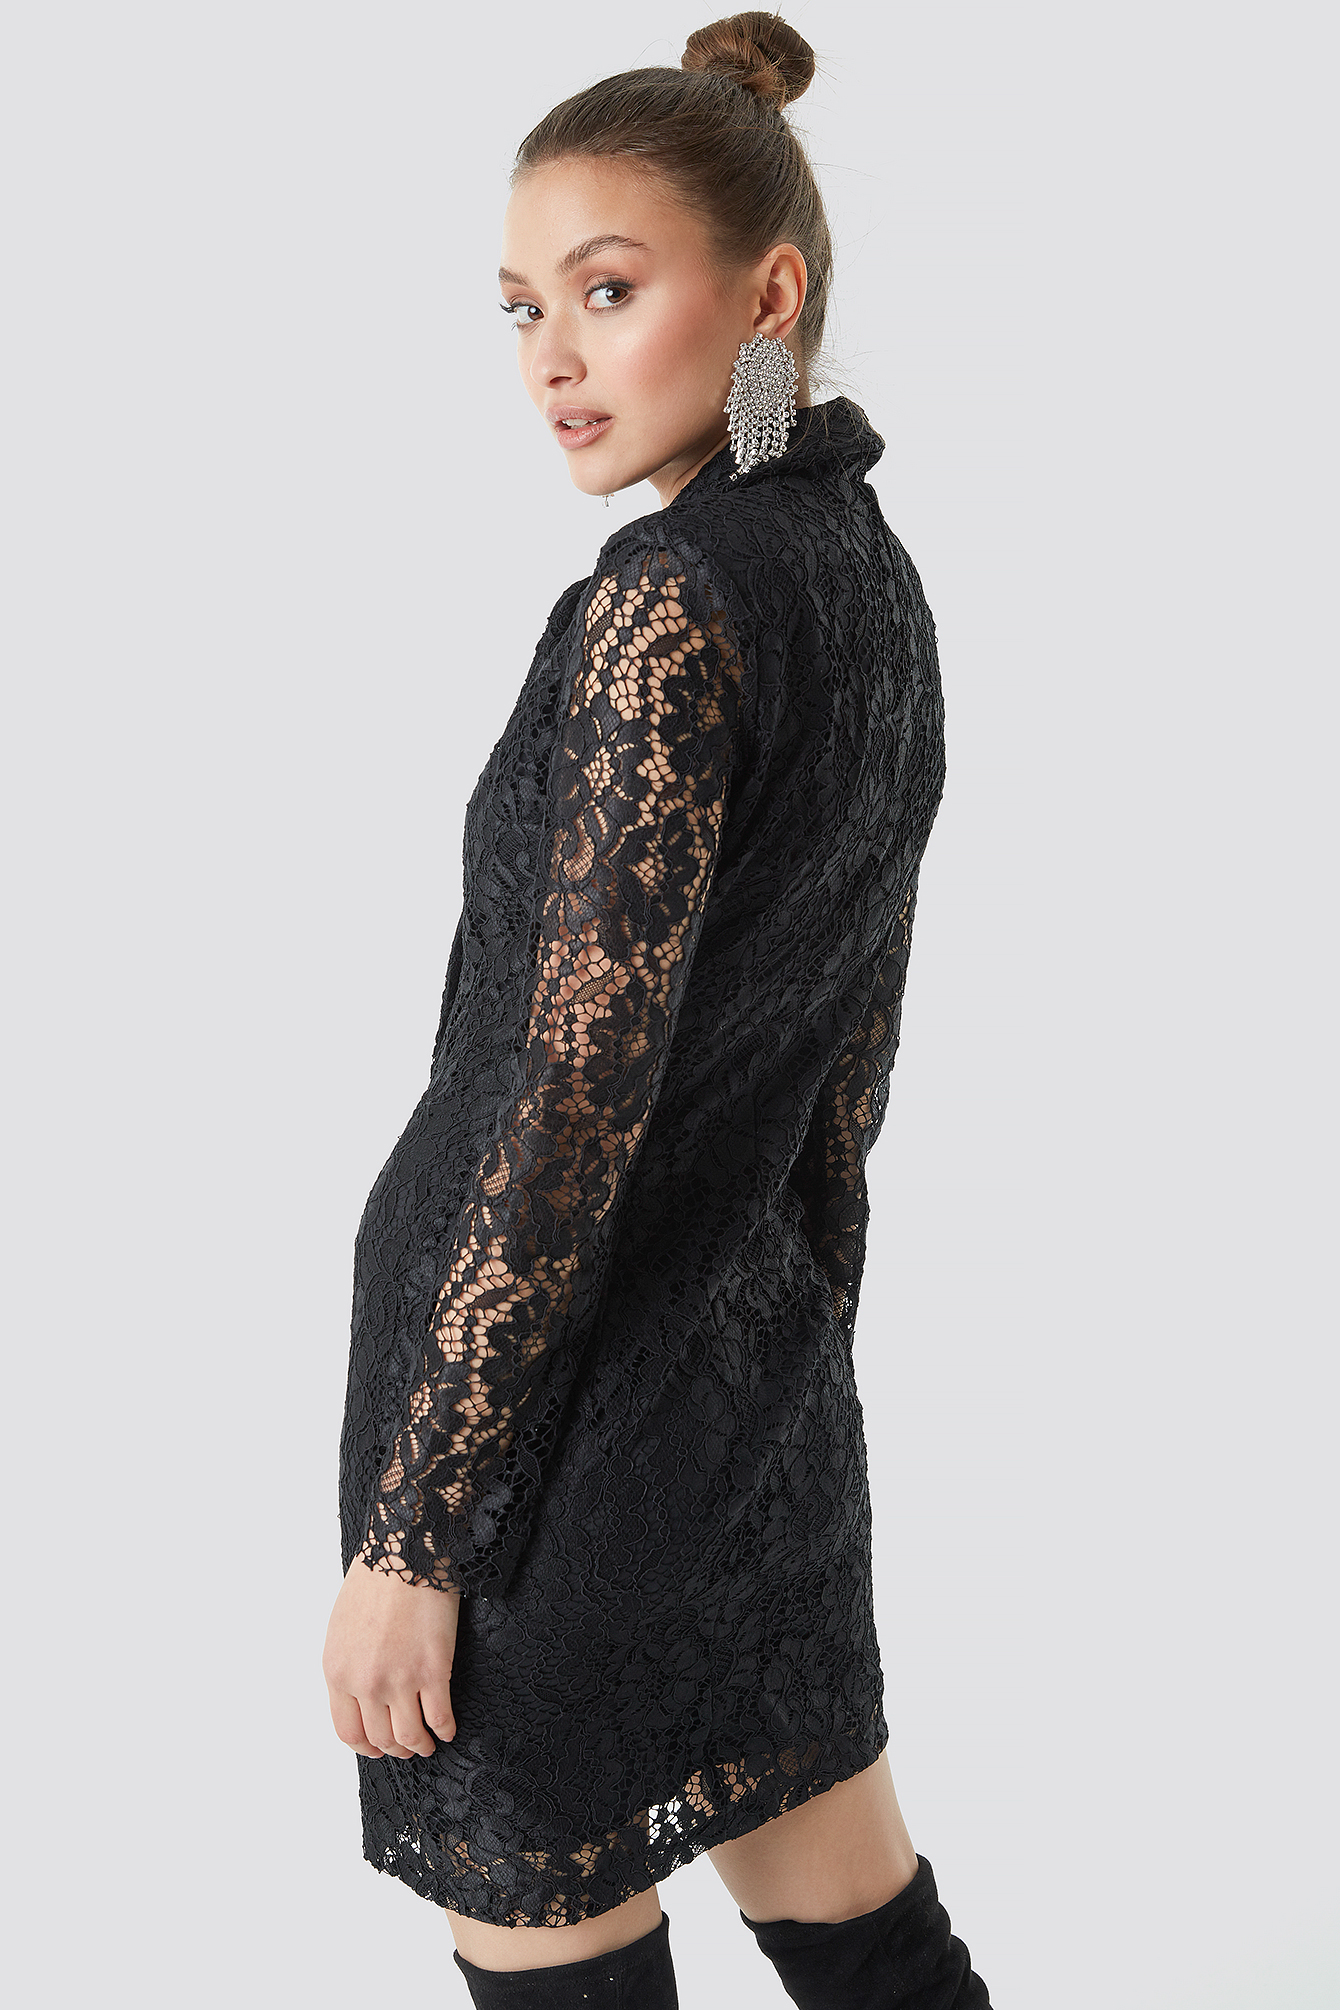 Lace Jacket Dress Black | na-kdlounge.com